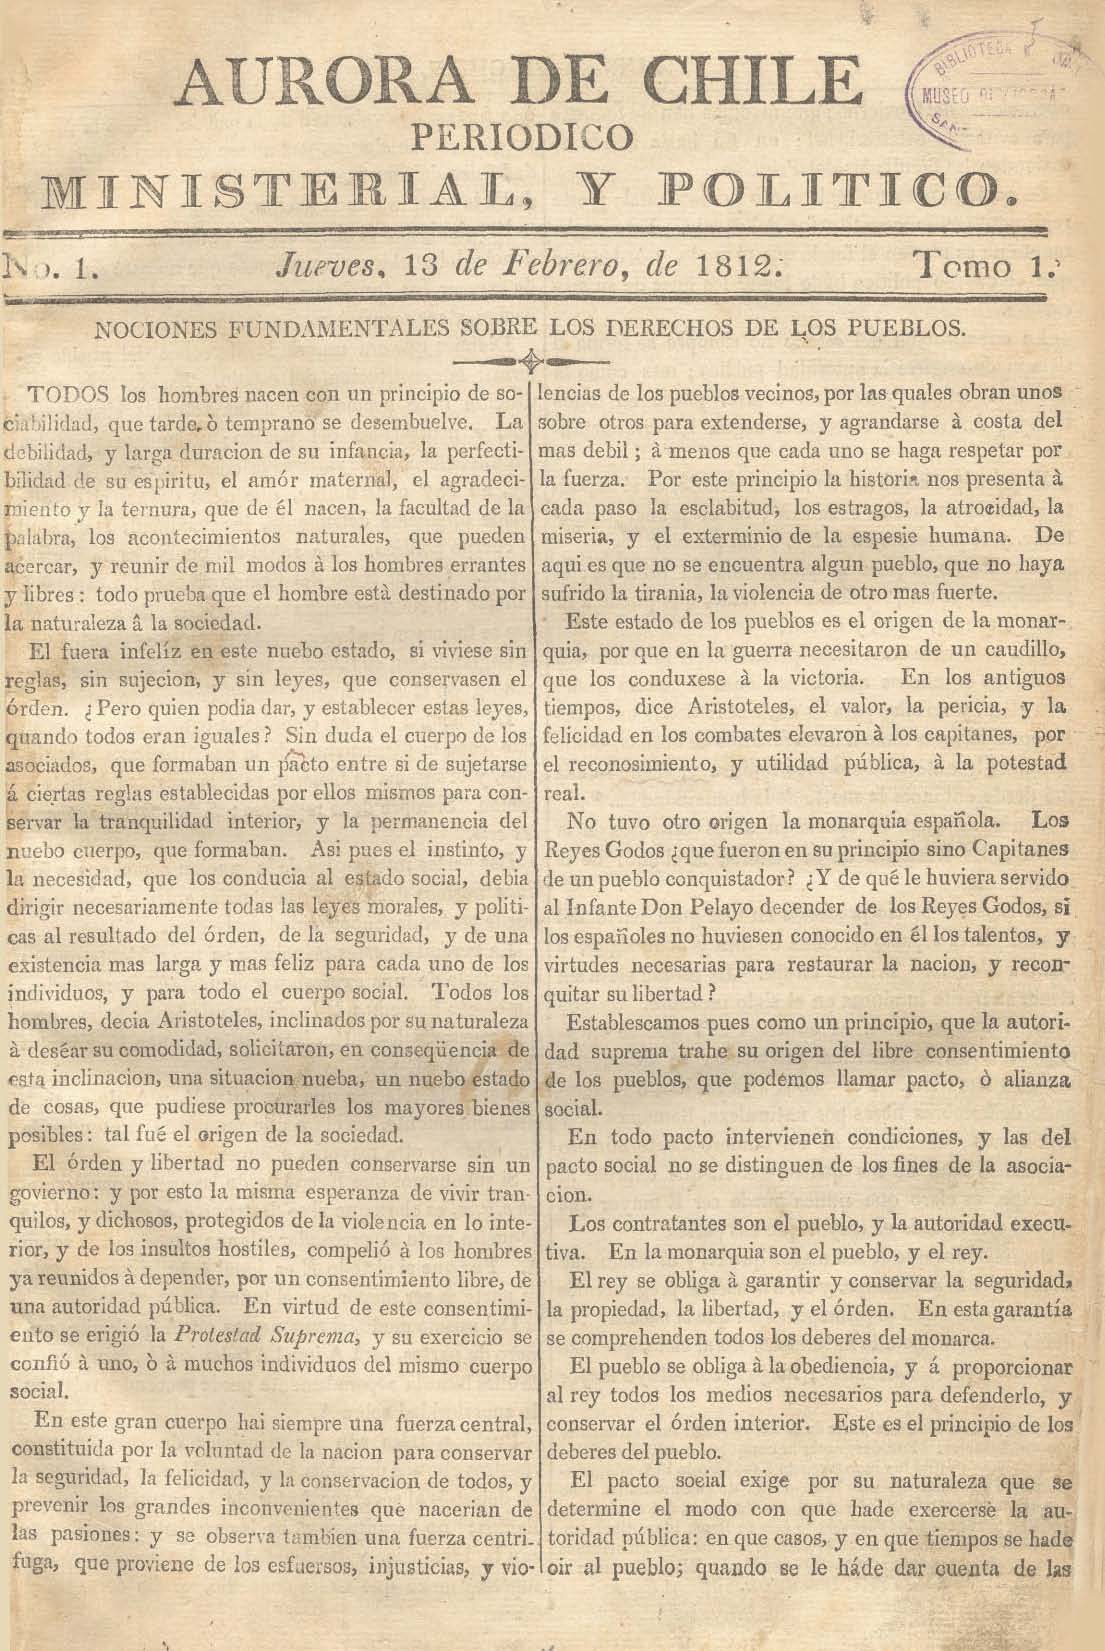 											Ver Núm. 2 (1813): Tomo II. Jueves 14 de Enero
										